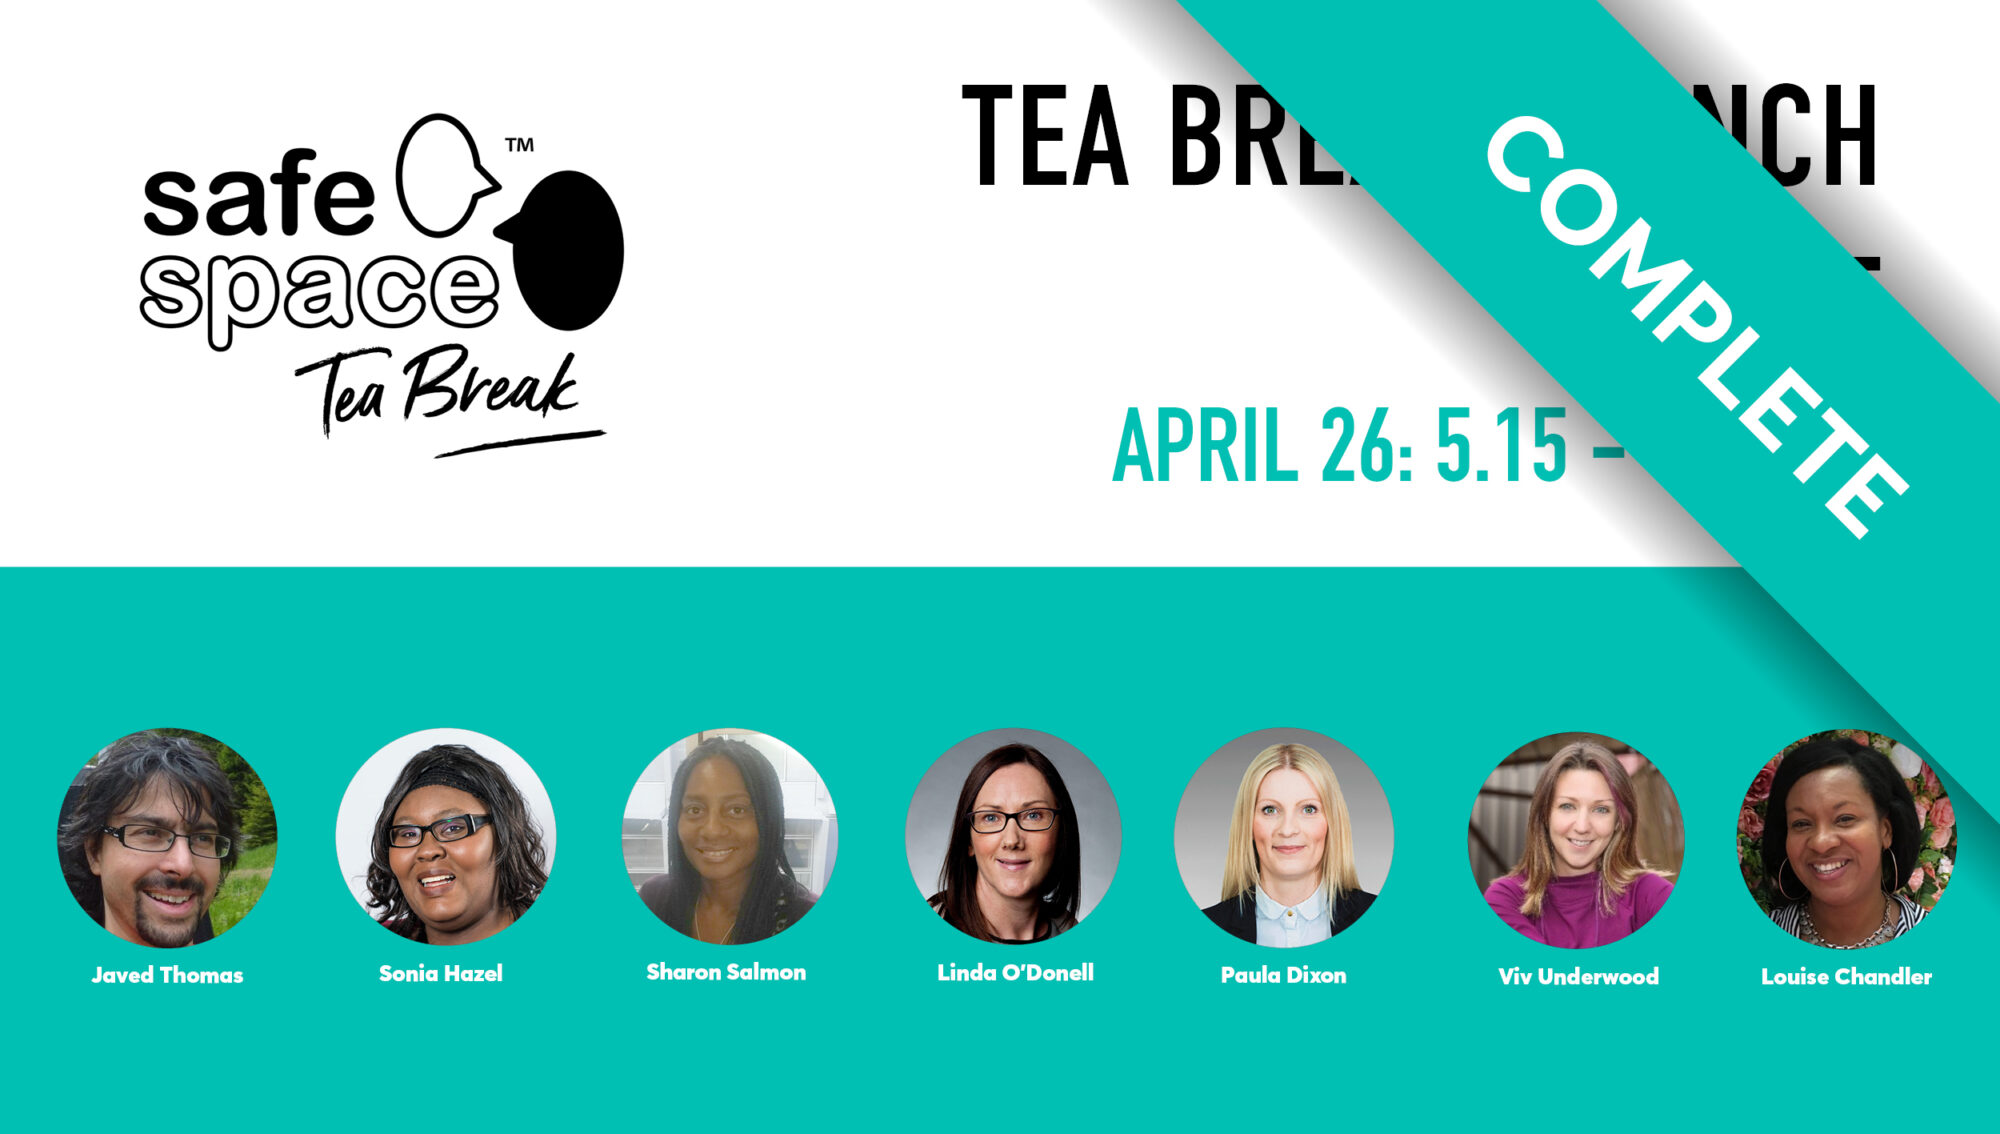 tea break launch event complete. Overview of speakers